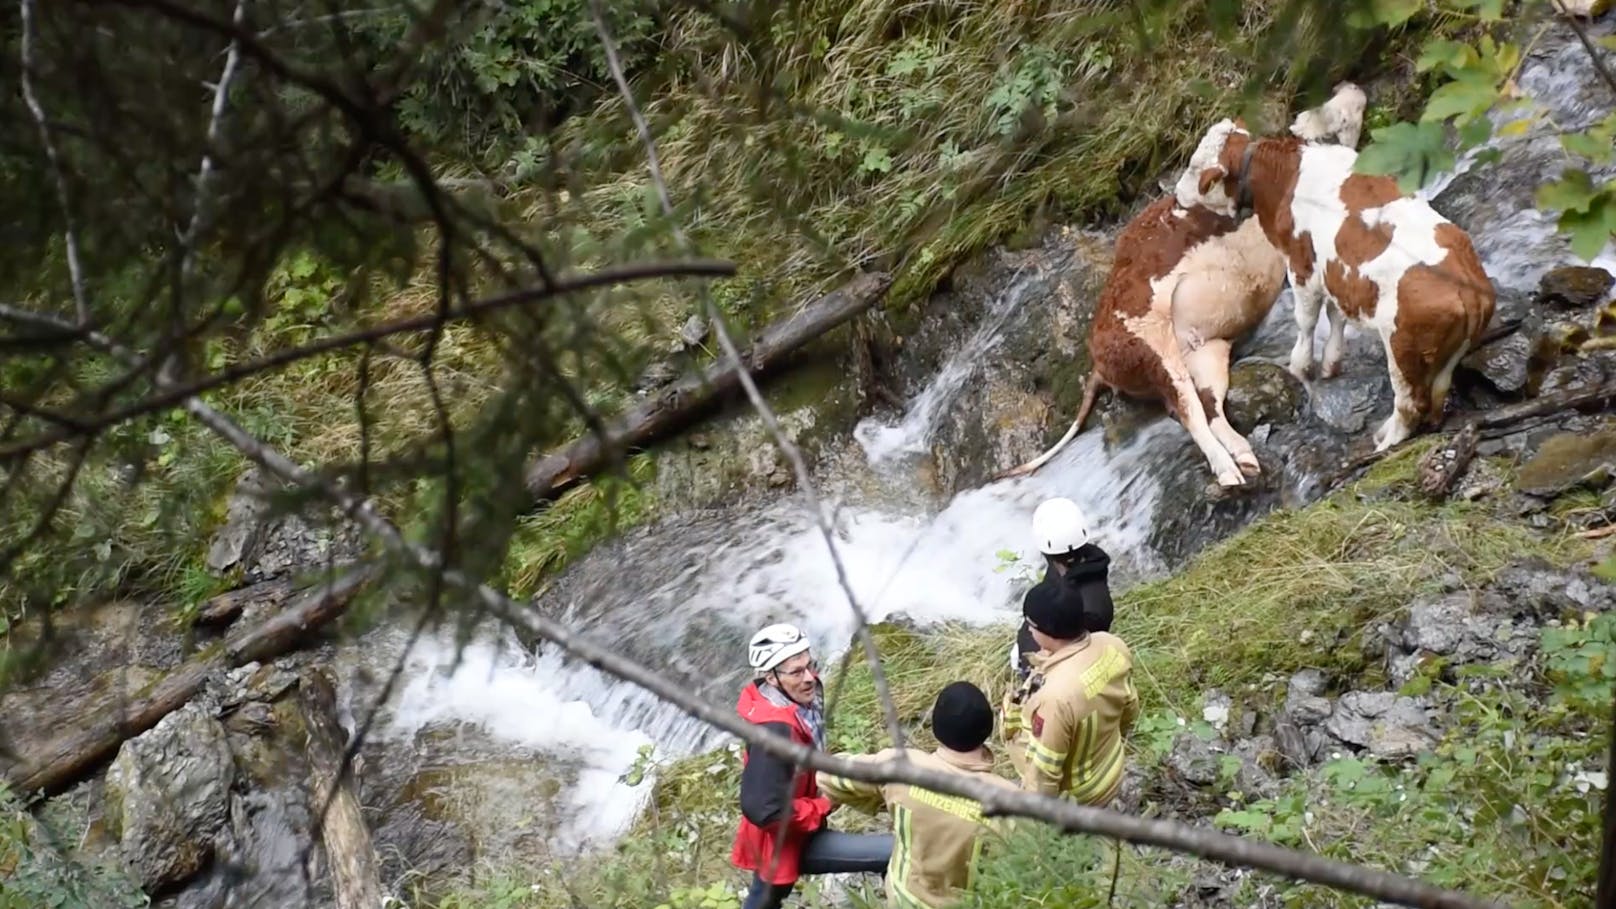 Tiertragödie im Zillertal: 3 Kälber stürzten 300 Meter ab - zwei starben, das dritte Tier überlebte.